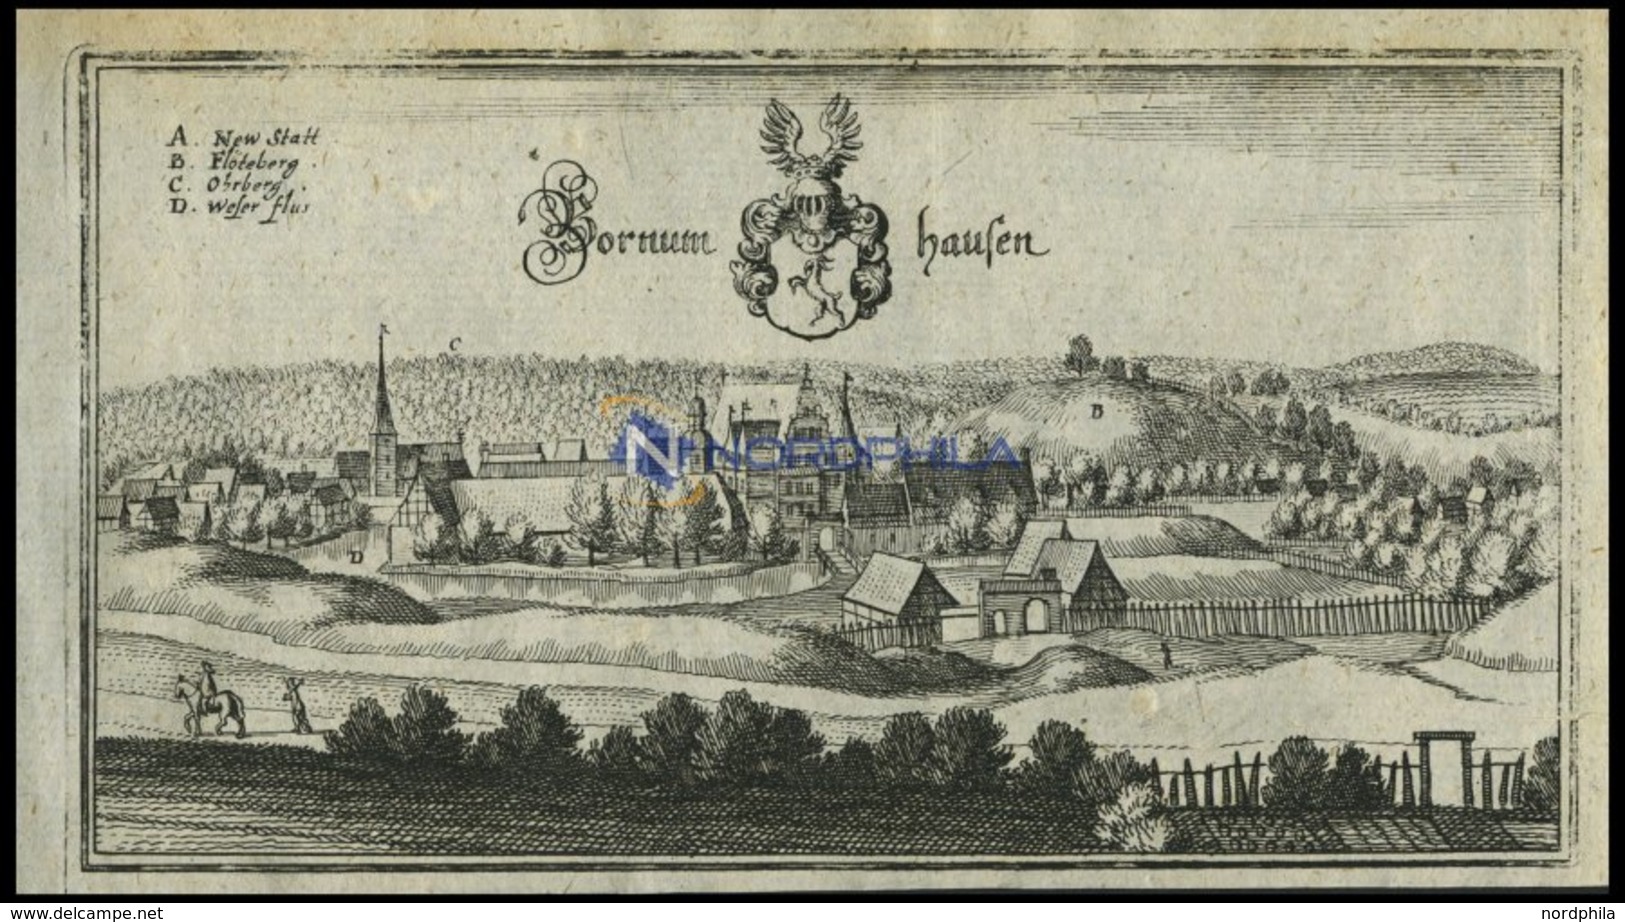 BORNUMHAUSEN, Gesamtansicht, Kupferstich Von Merian Um 1645 - Lithographies